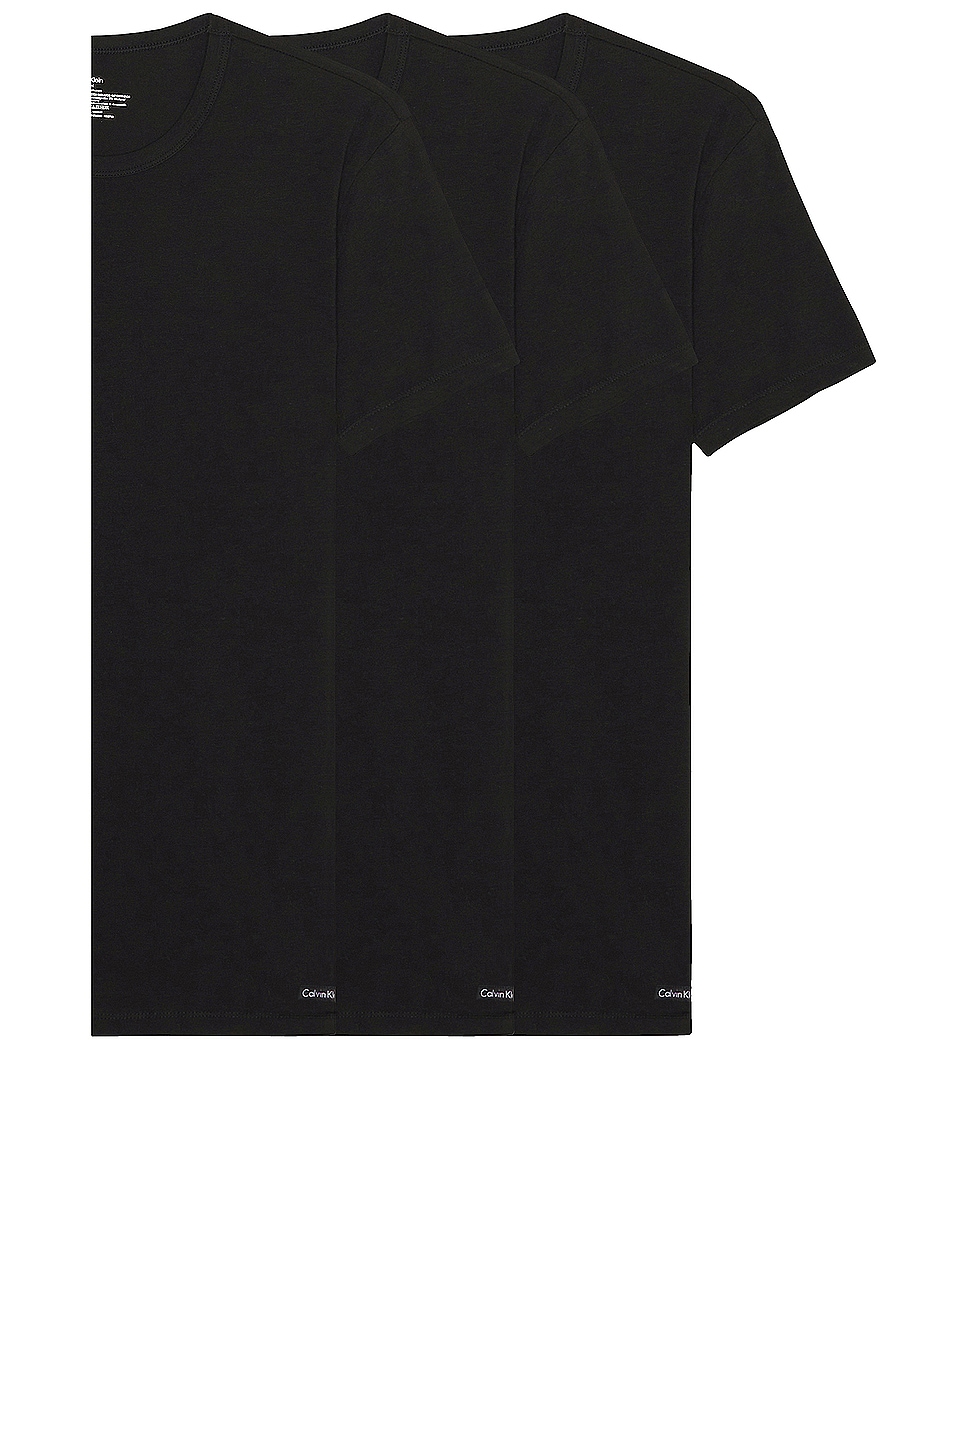 Image 1 of Calvin Klein Underwear Short Sleeve Tee 3 Pack in Black